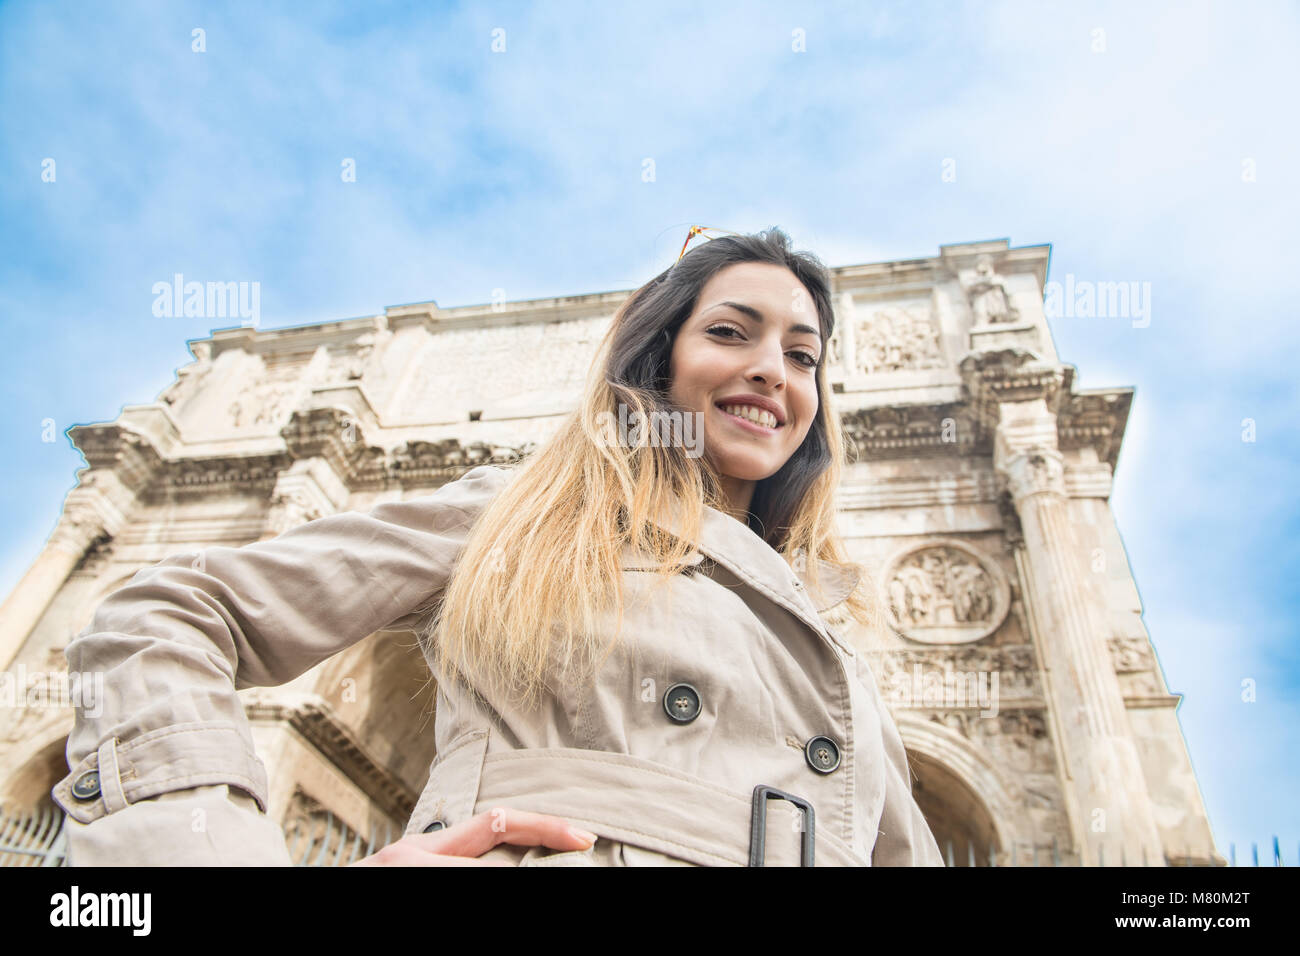 Low Angle View von jungen hübschen Touristische lächelnde Frau mit Kamera, im Hintergrund Triumphbogen des Konstantin Monument in Rom Italien Stockfoto